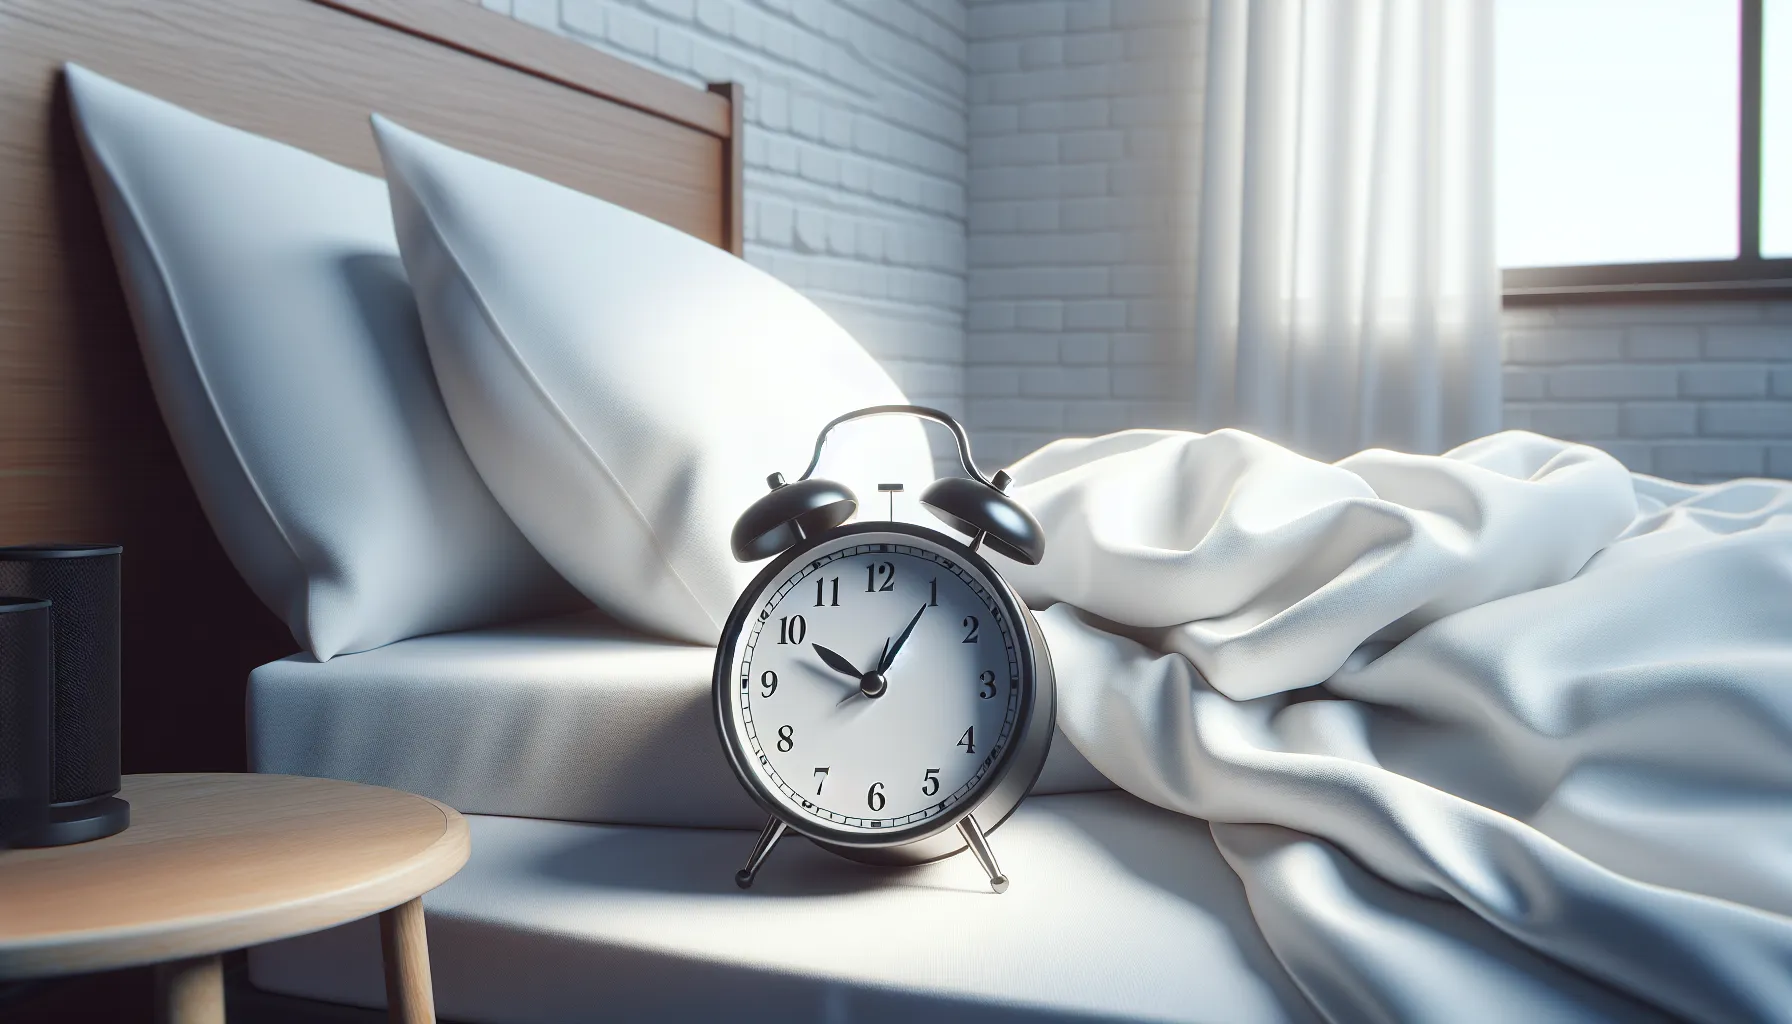 Imagen de un reloj despertador junto a una cama con sábanas blancas, simbolizando la importancia del sueño en la vida de las personas y la necesidad creada por Dios para descansar y recuperar energías.